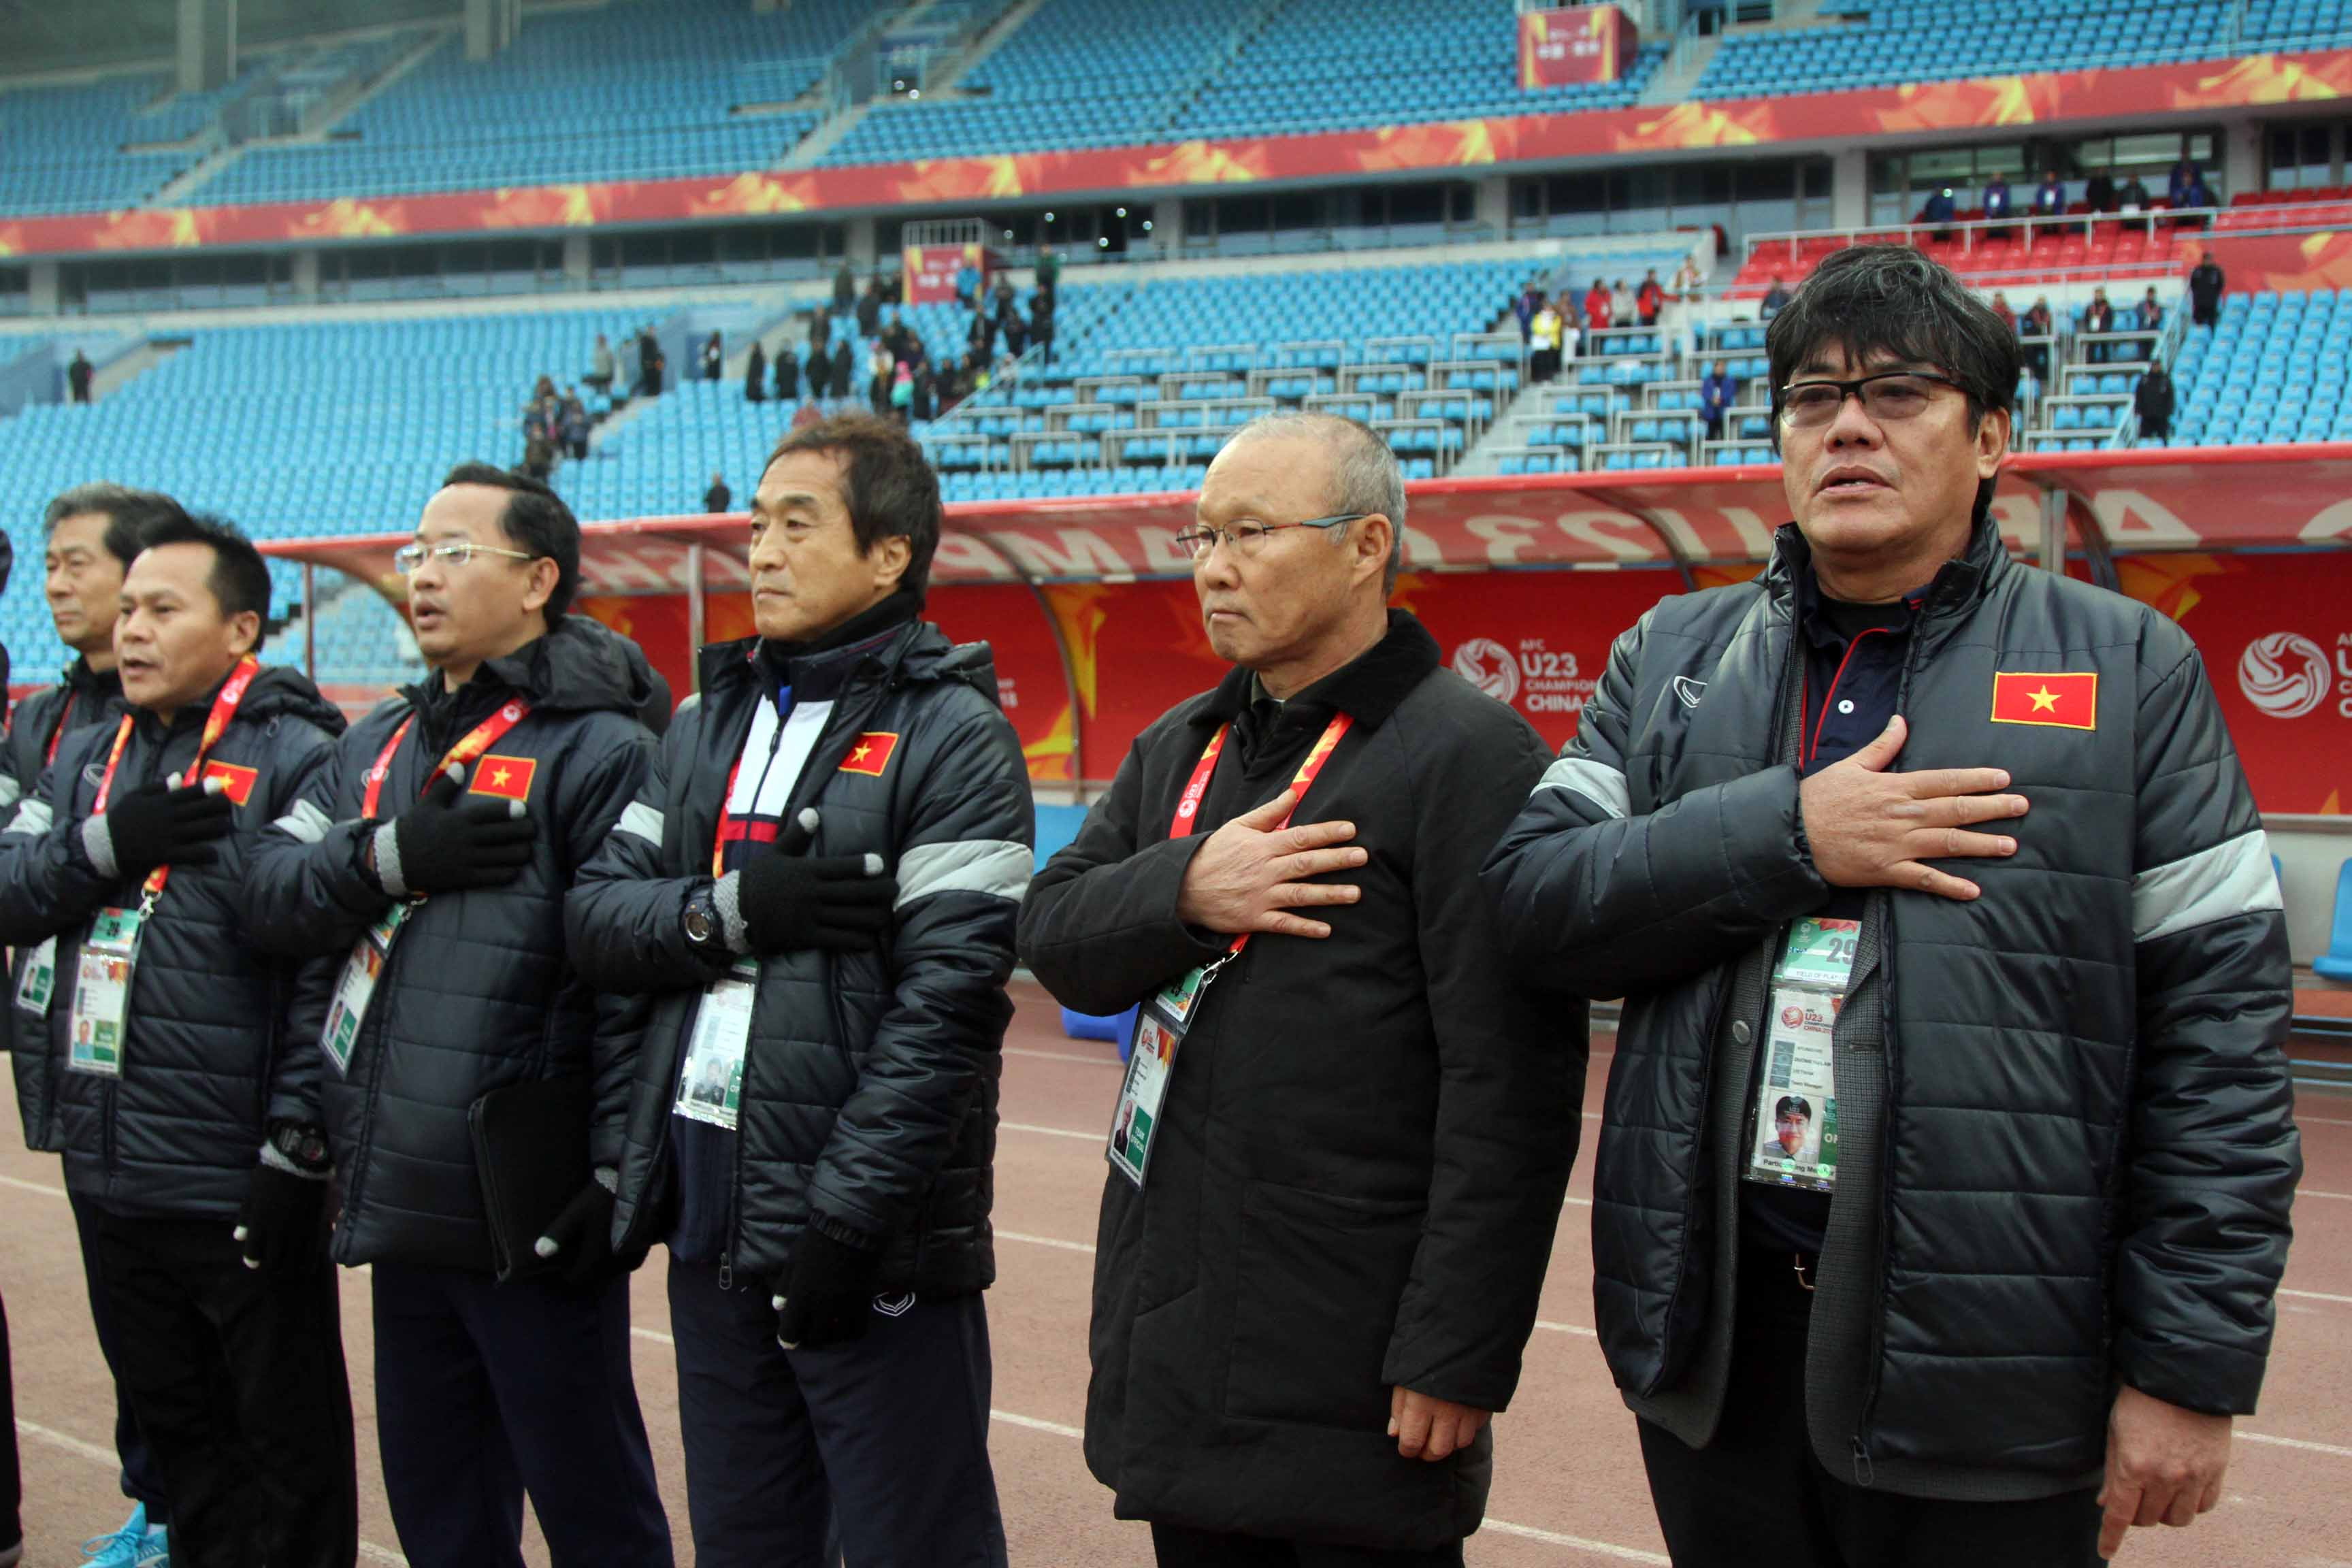 Ông Park (thứ 2 từ phải) đặt tay trên ngực áo khi quốc ca VN vang lên. Ảnh: N.K